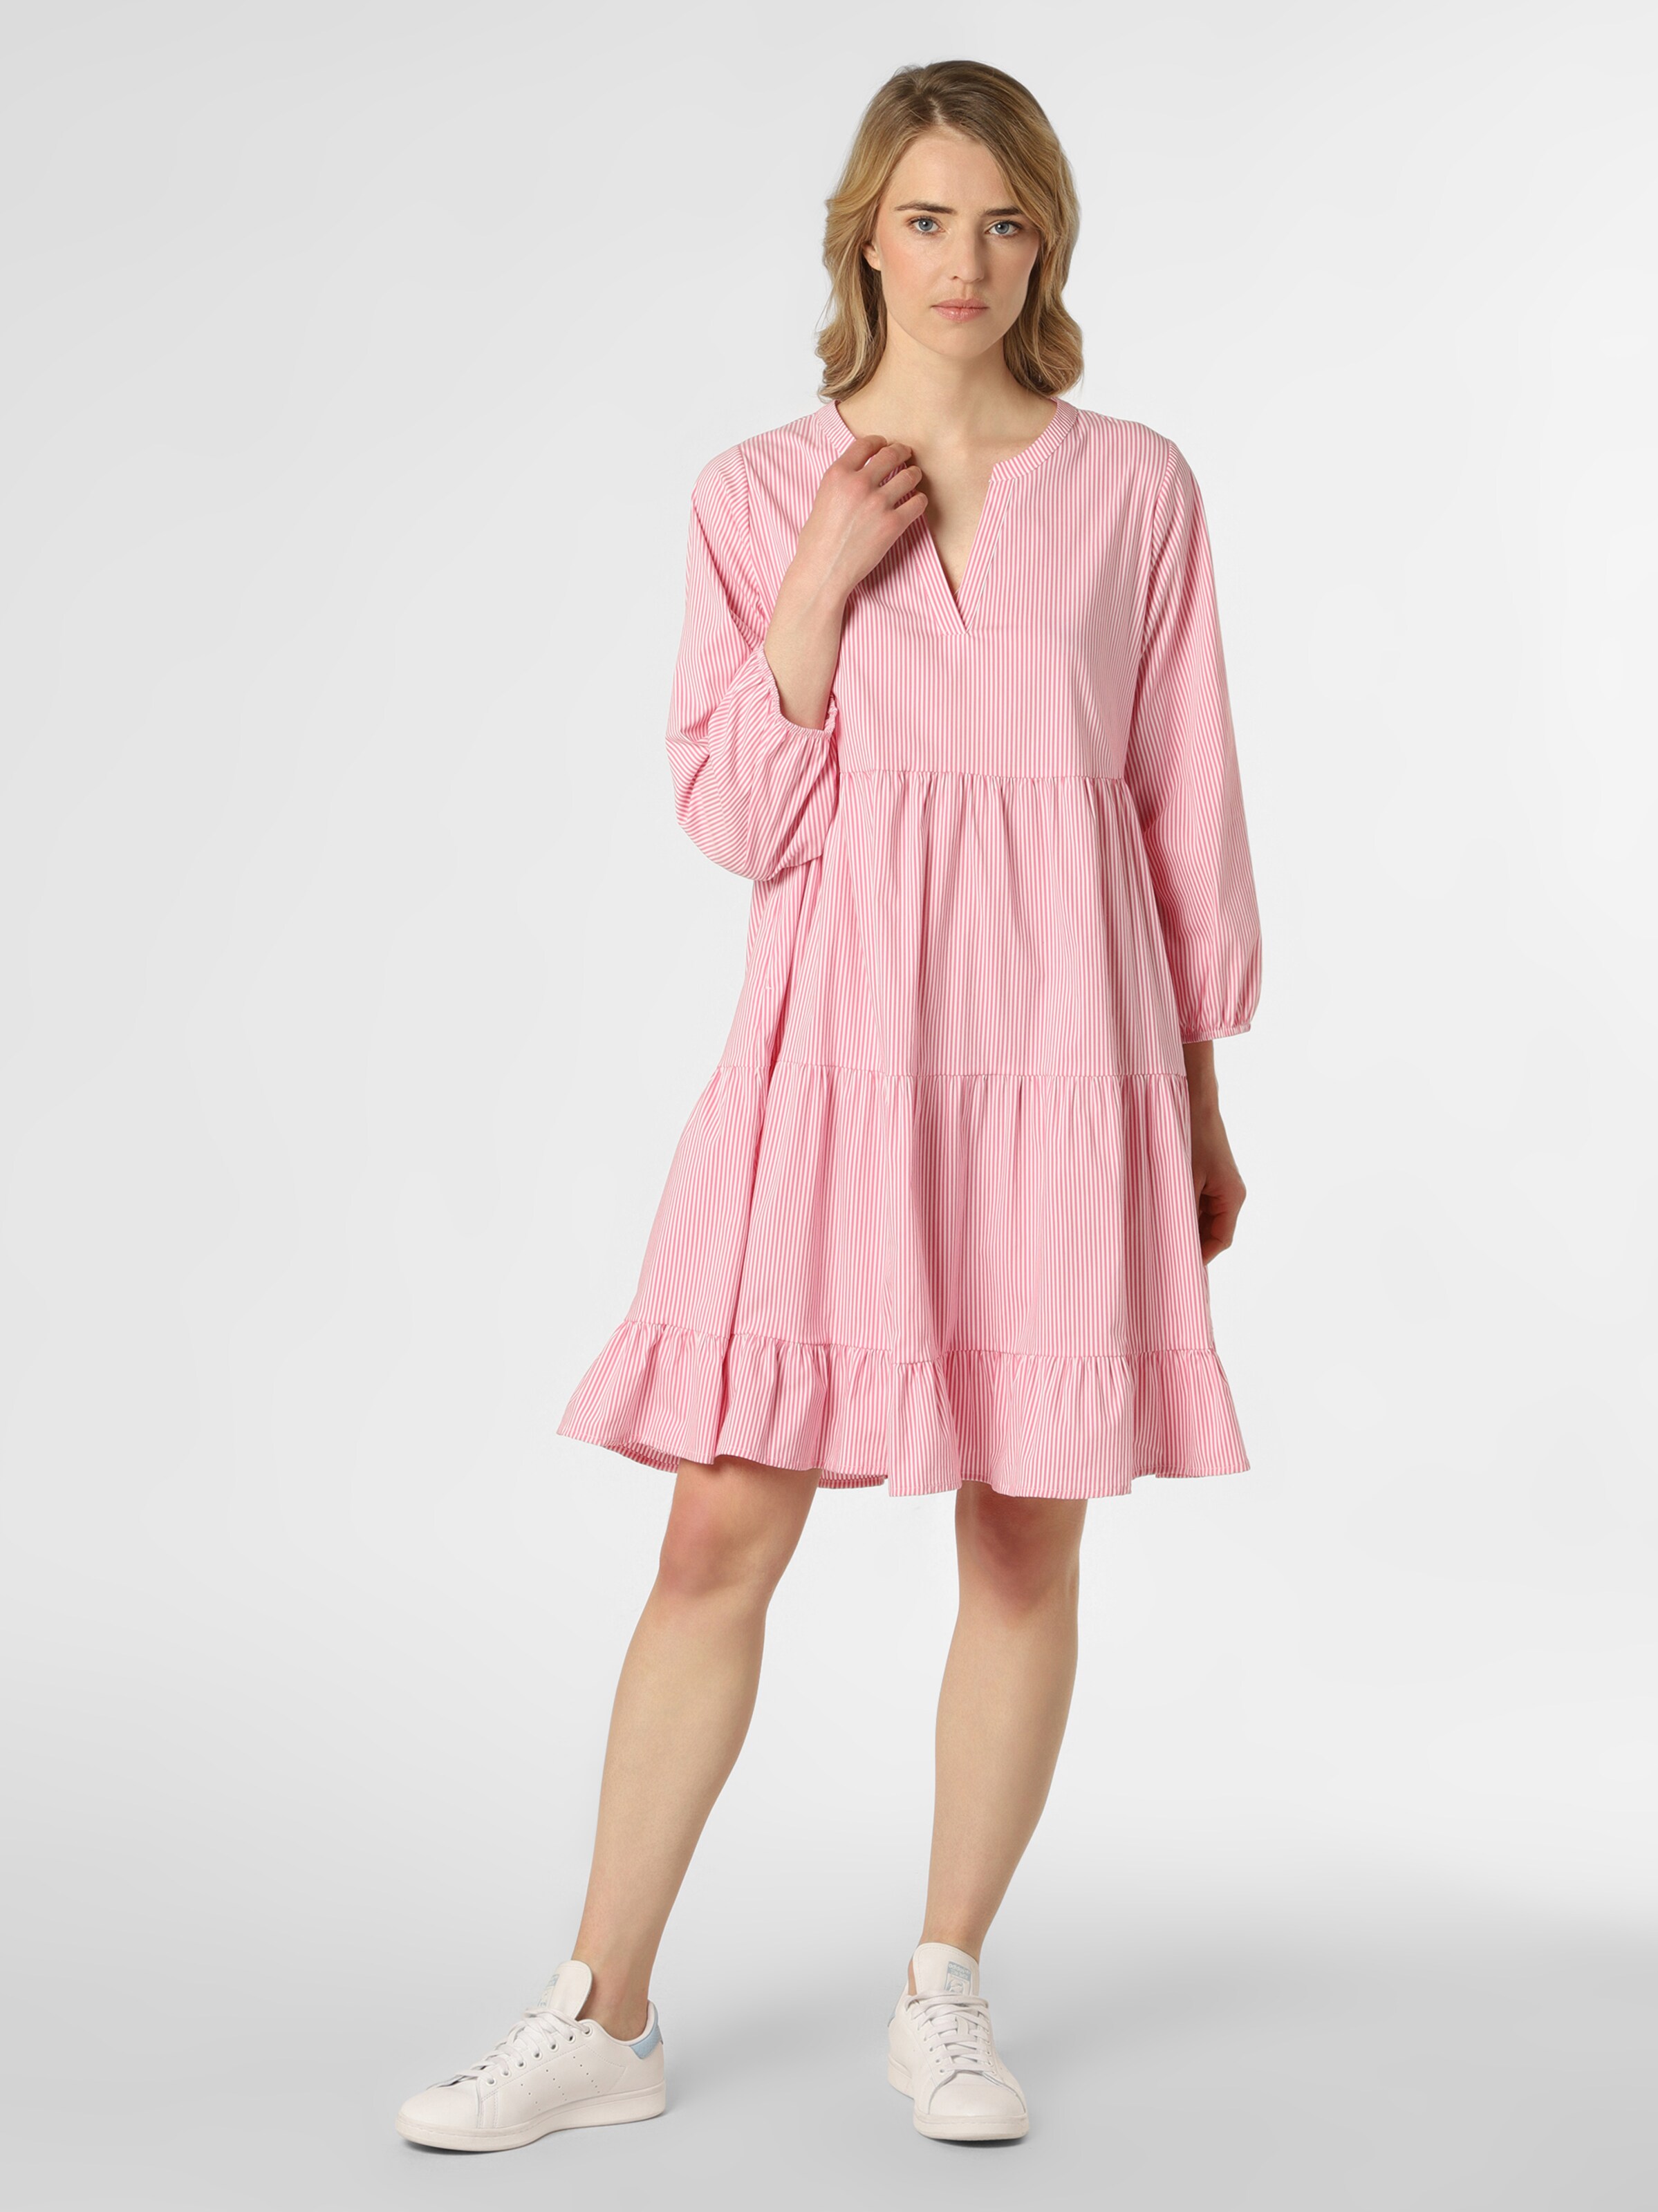 Frauen Große Größen Marie Lund Kleid in Pink - YK92141